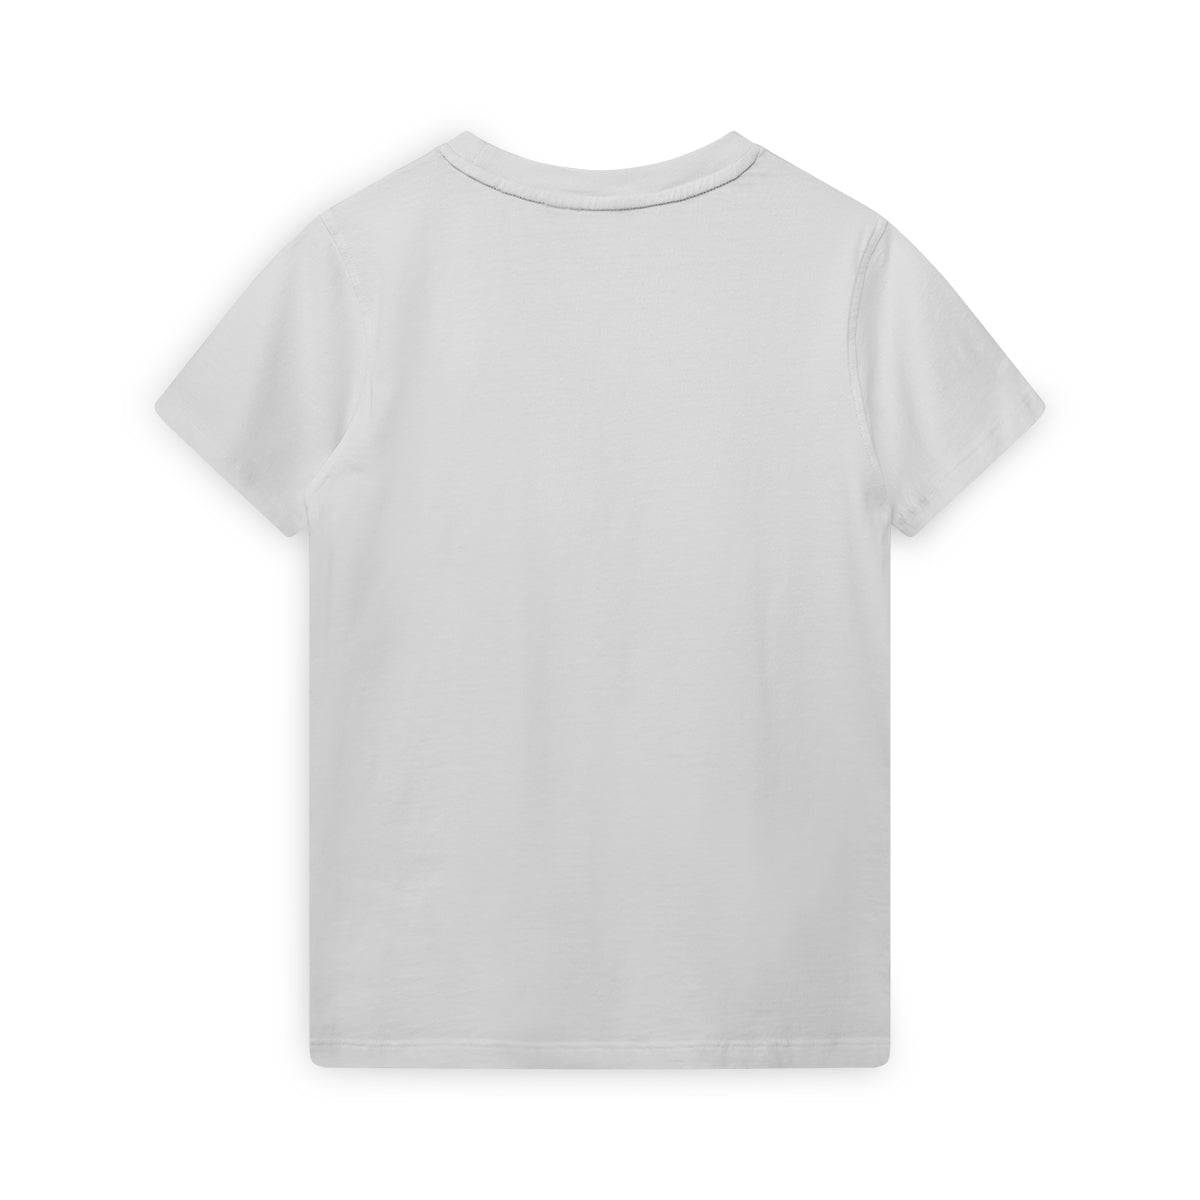 Jongens T-shirt short sleeves van SevenOneSeven in de kleur Snow White in maat 170-176.